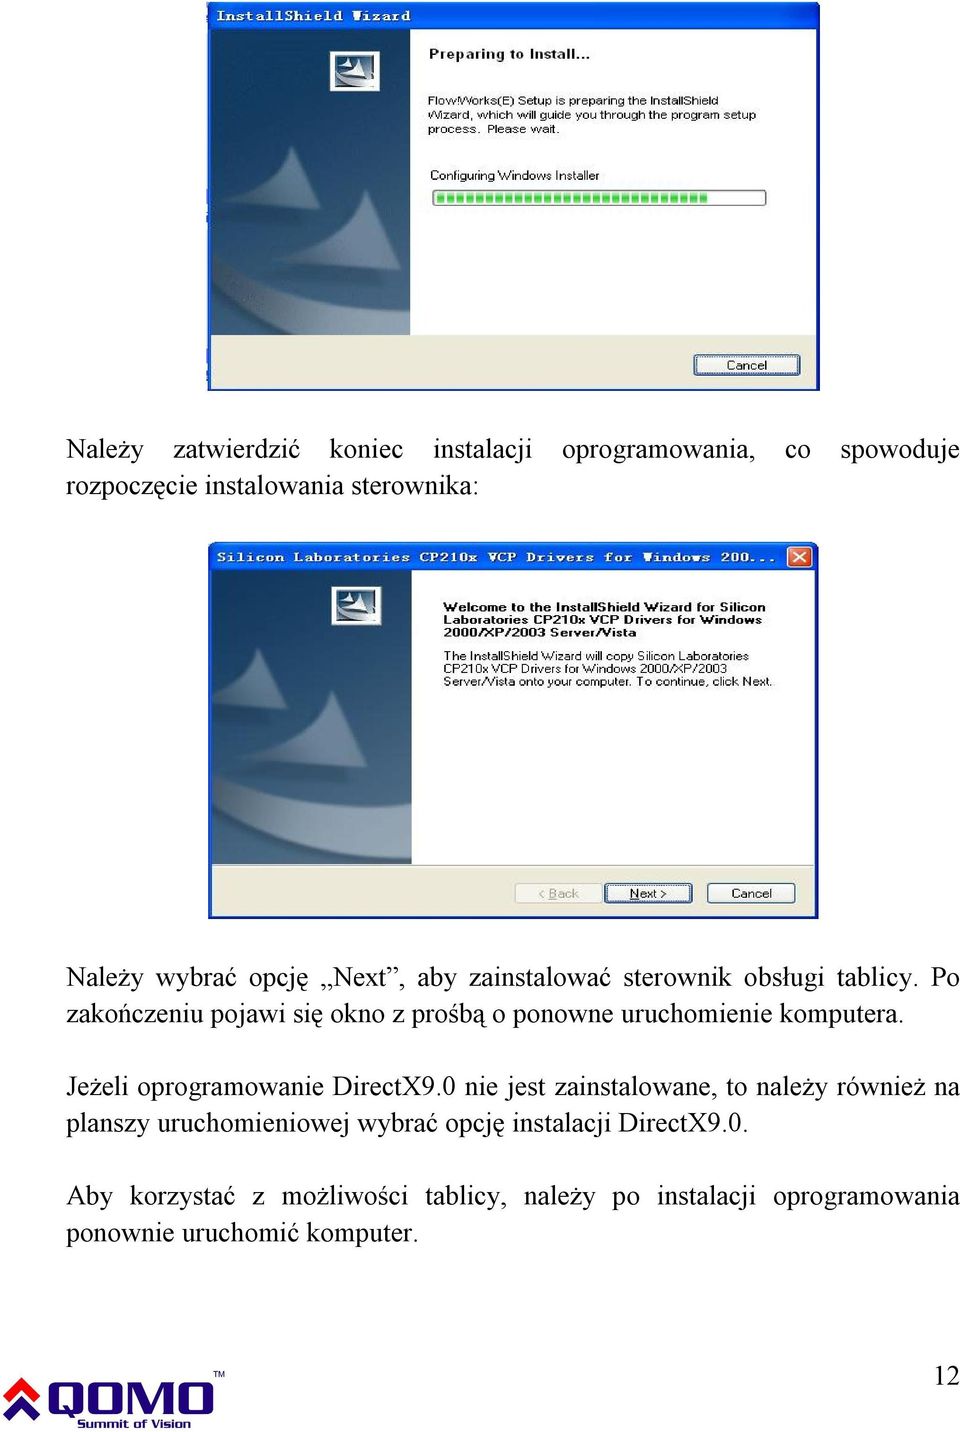 Po zakończeniu pojawi się okno z prośbą o ponowne uruchomienie komputera. Jeżeli oprogramowanie DirectX9.